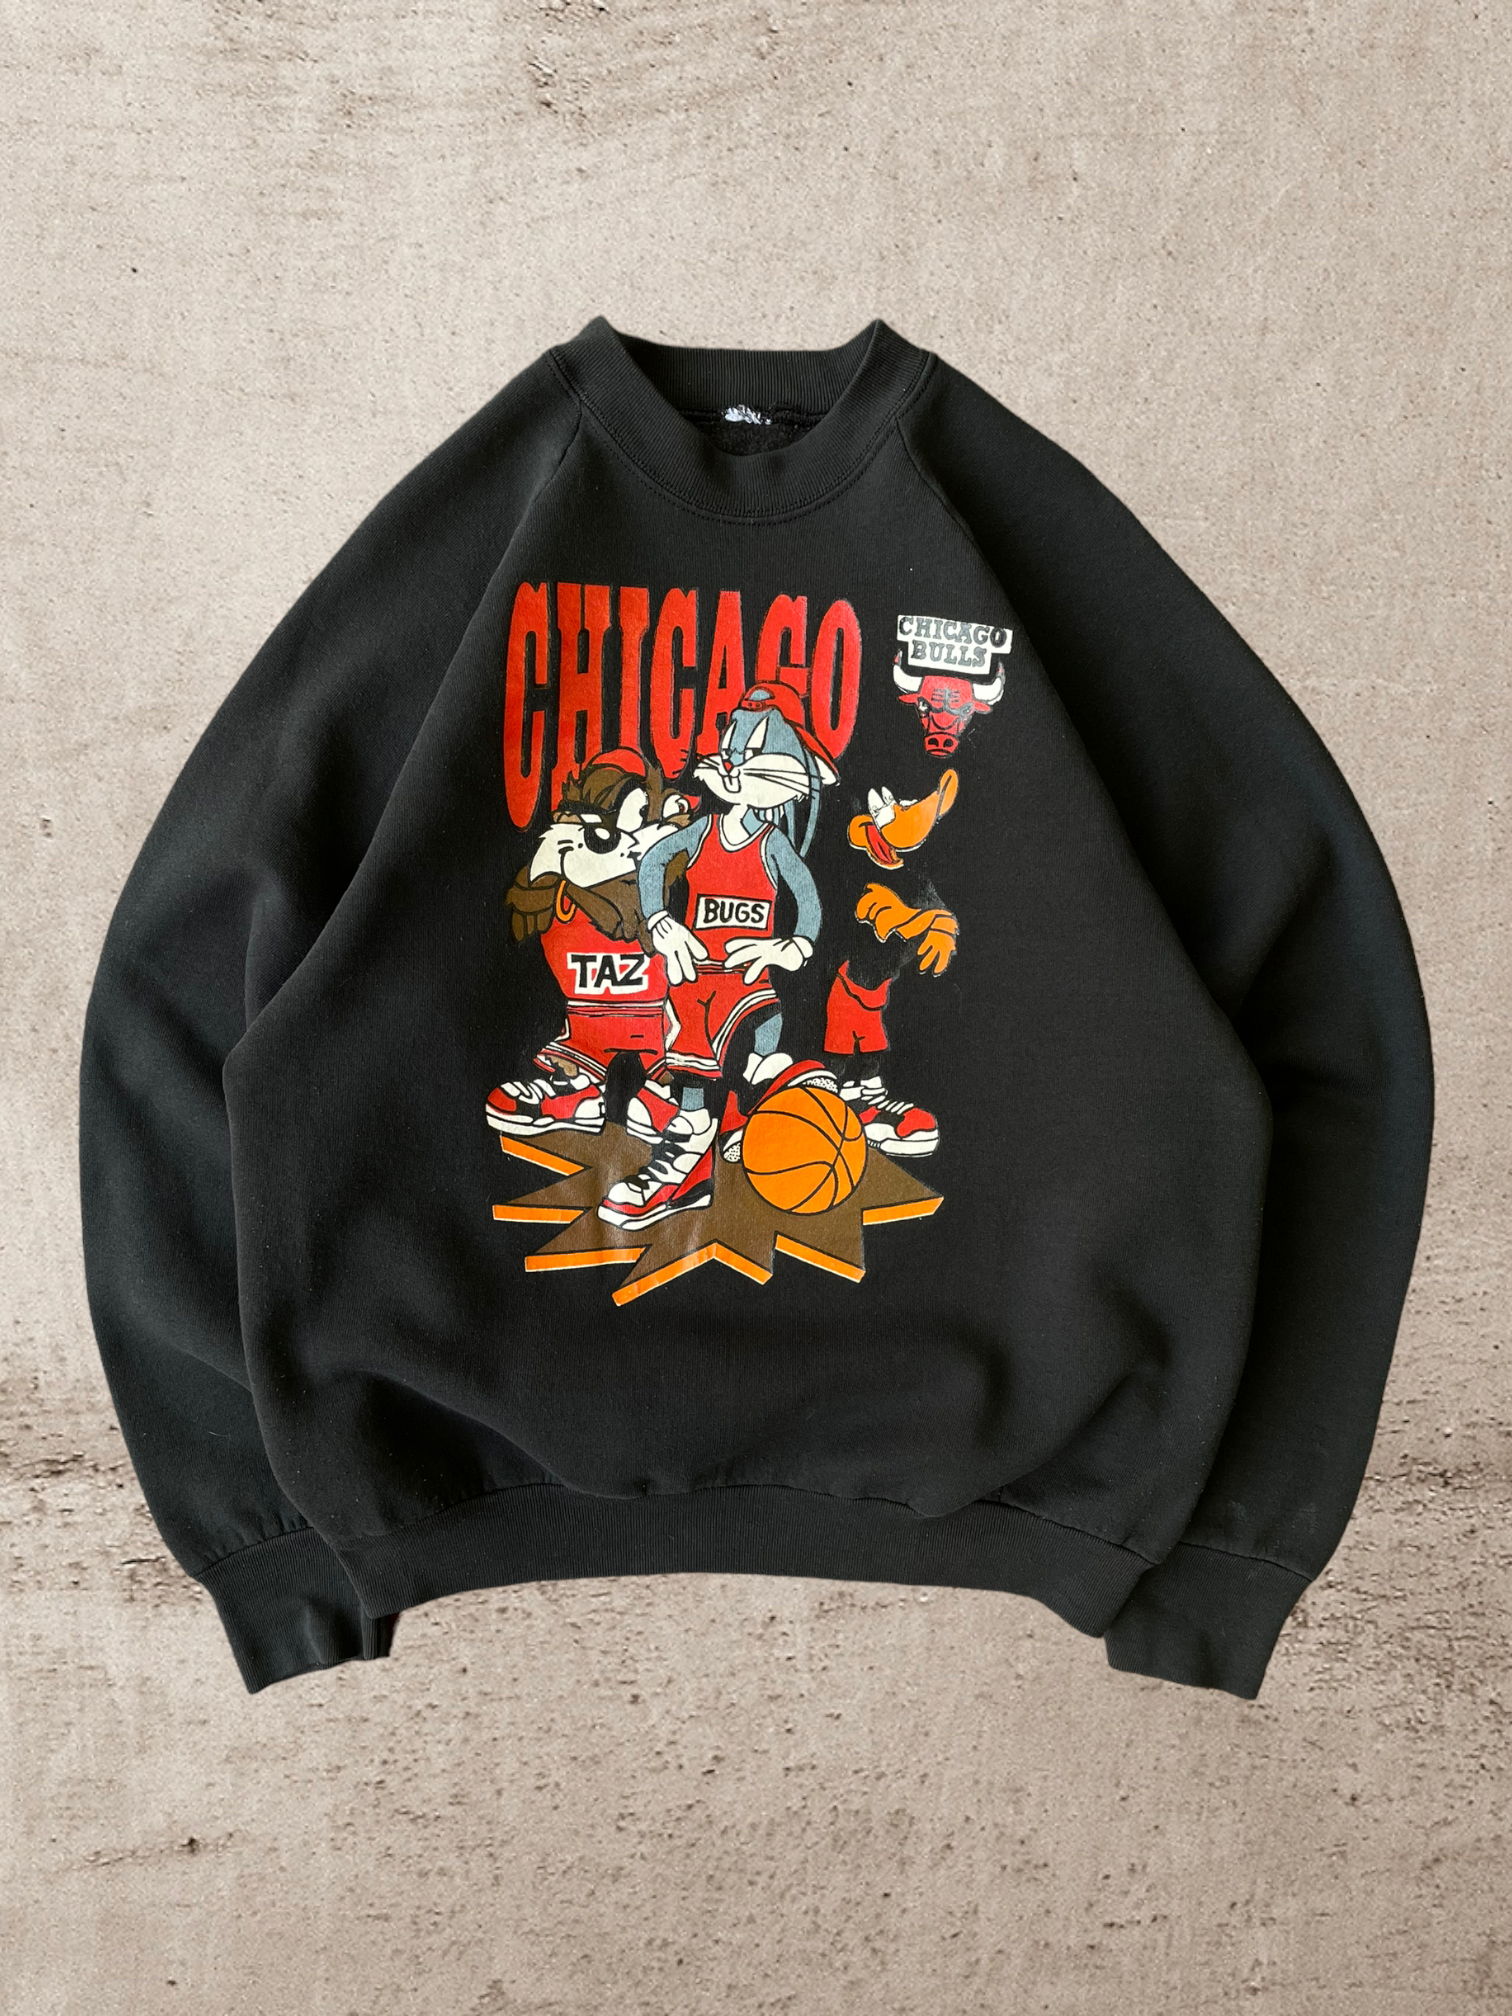 90s Chicago Bulls Looney Tunes Crewneck - Medium